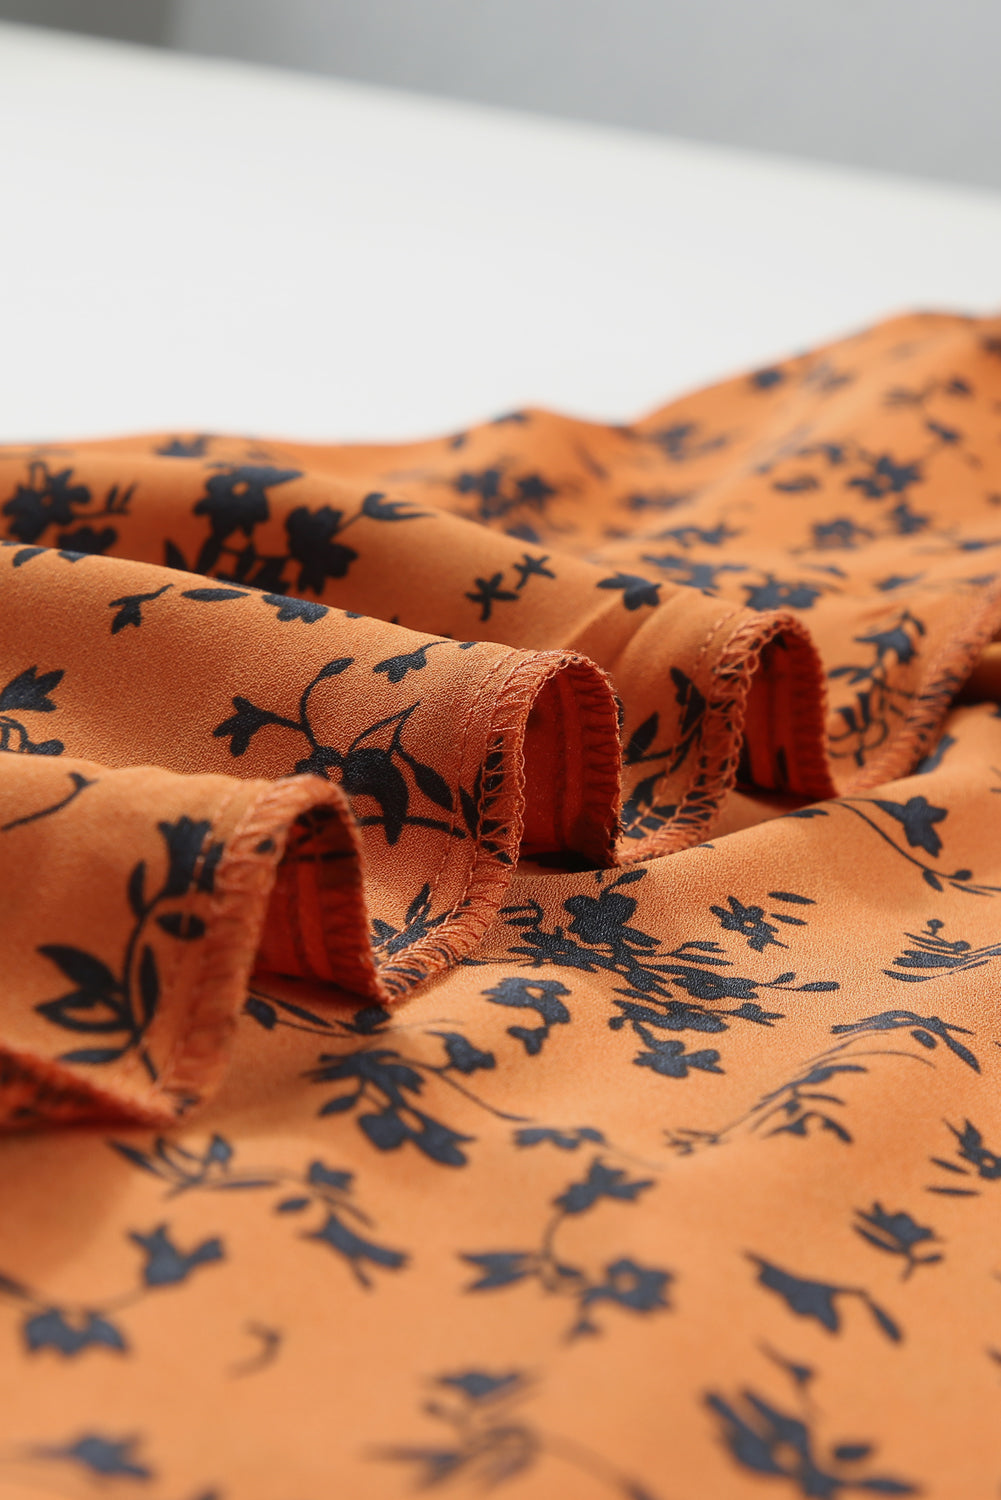 Orange Floral Print O-neck Long Sleeve Mini Dress Floral Dresses JT's Designer Fashion